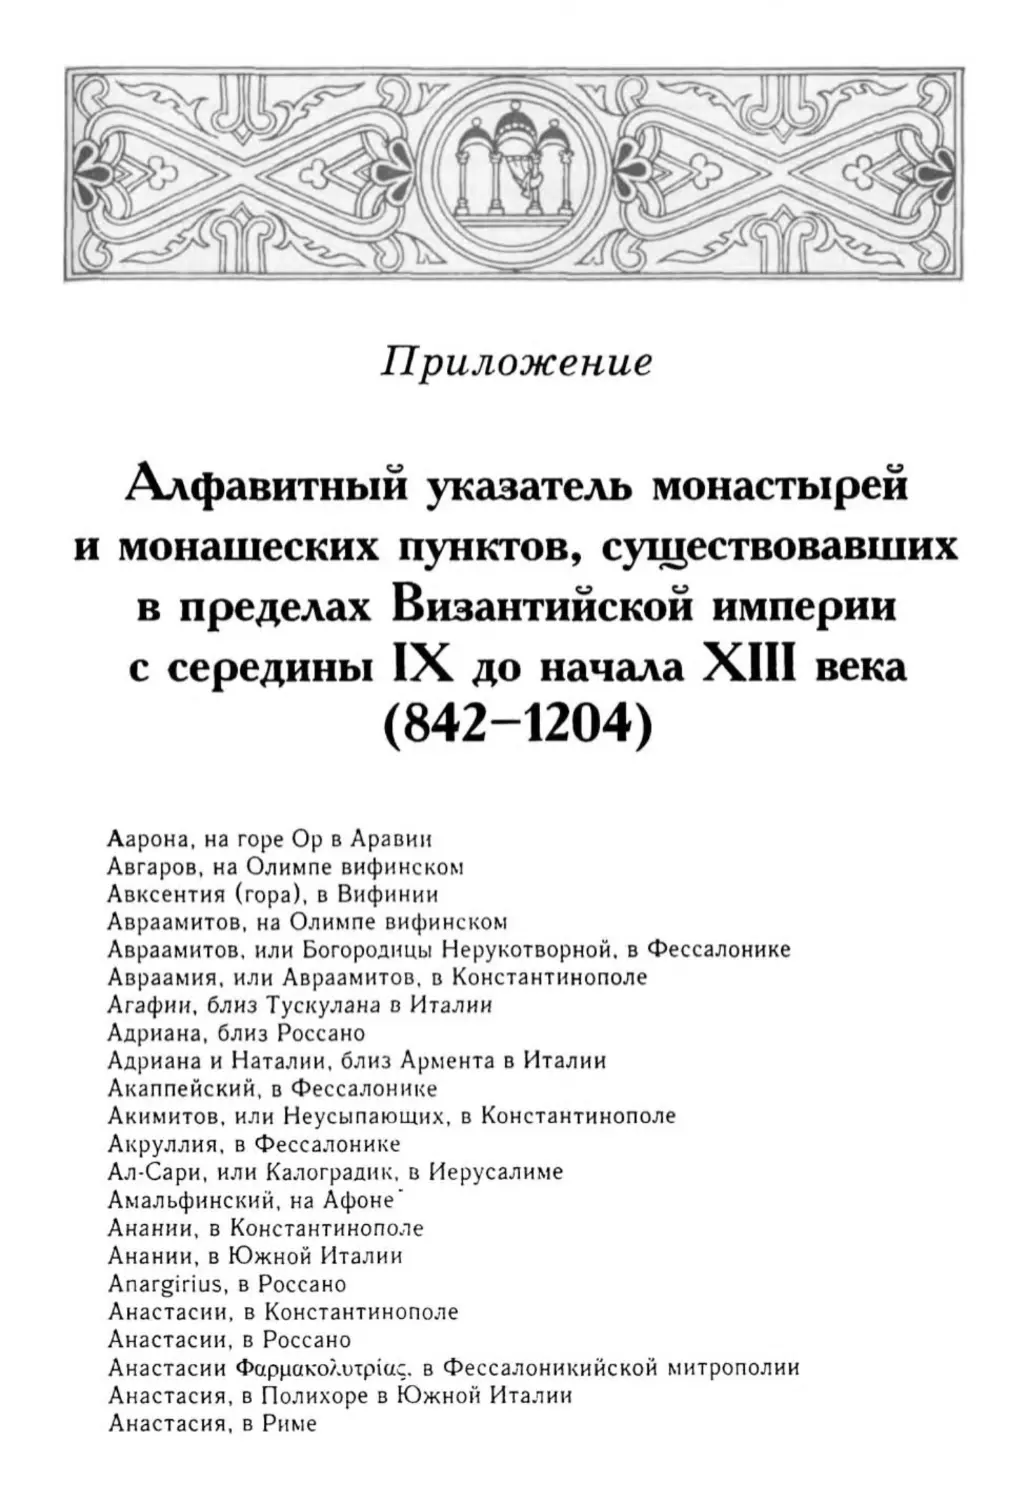 Приложение. Алфавитный указатель монастырей и монашеских пунктов, существовавших в пределах Византийской империи с середины IX до начала XIII века (842-1204)